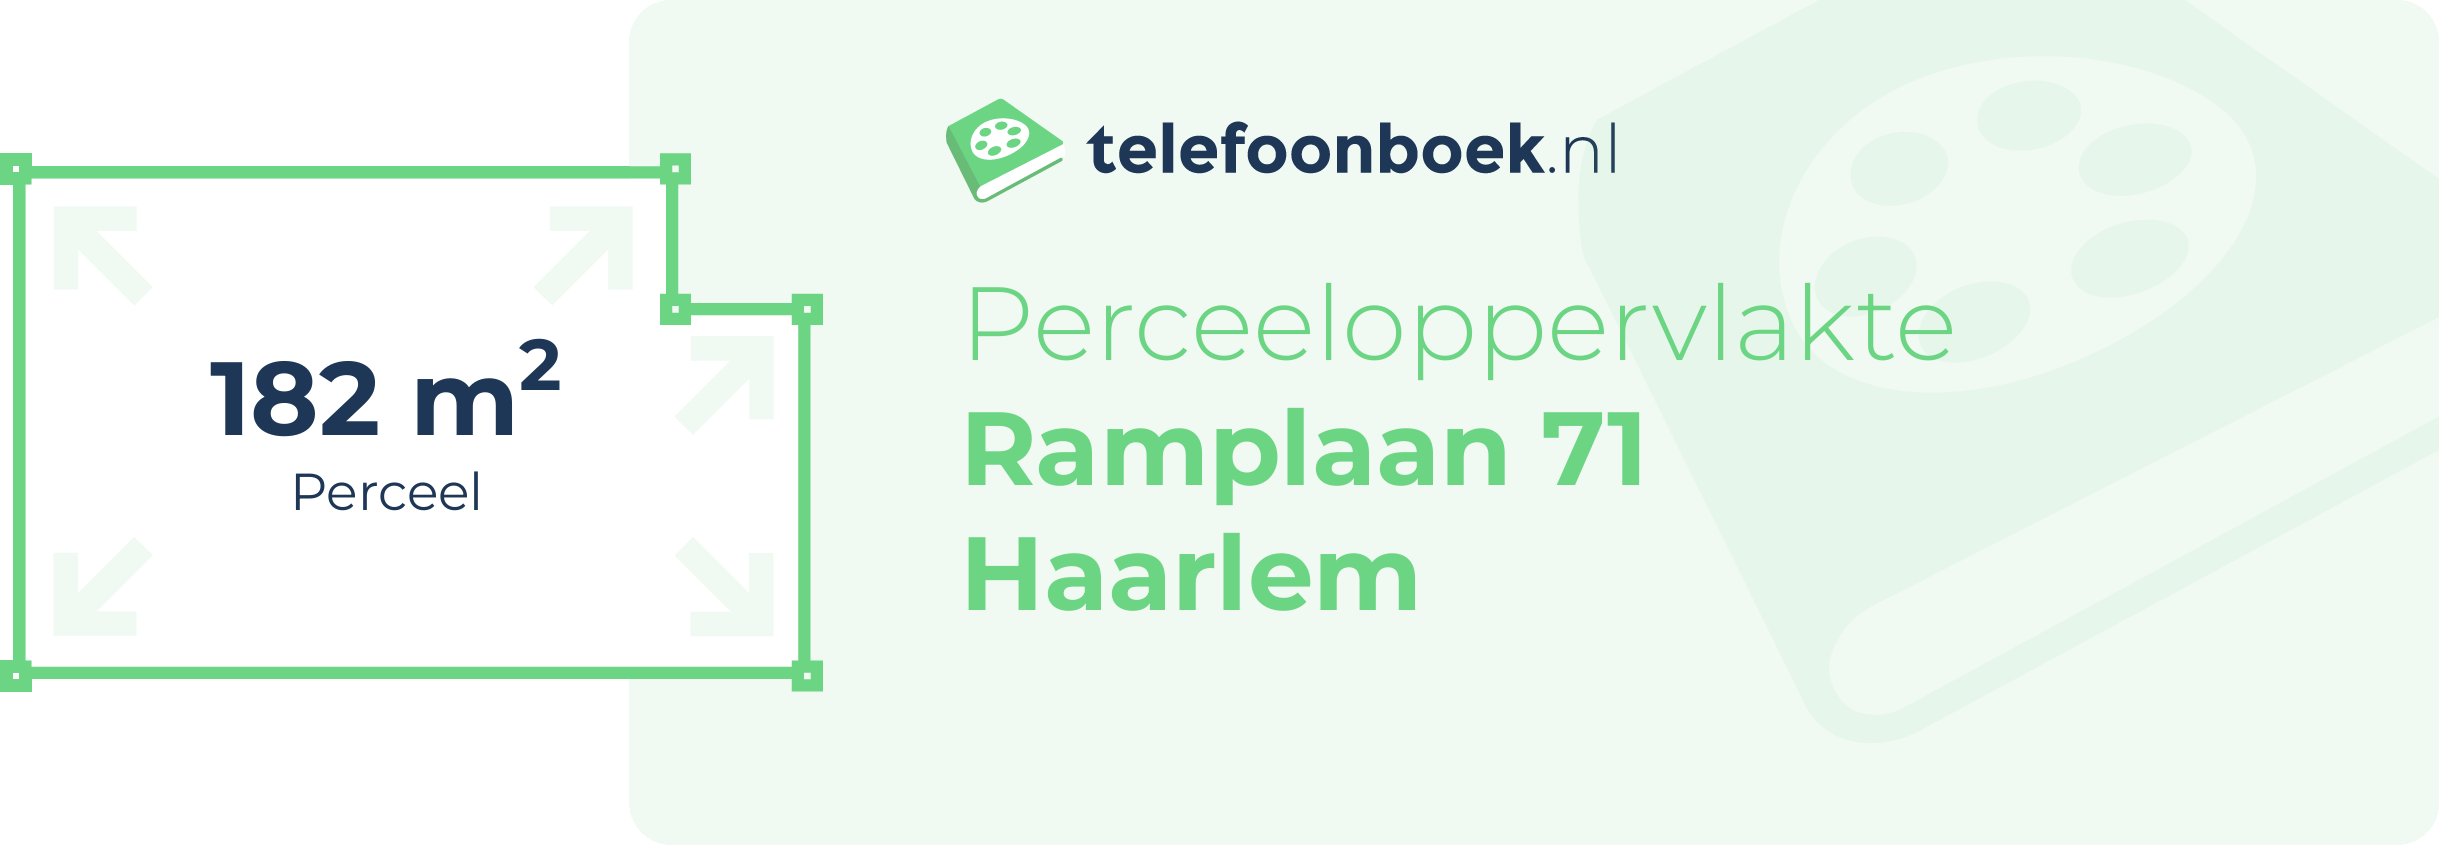 Perceeloppervlakte Ramplaan 71 Haarlem